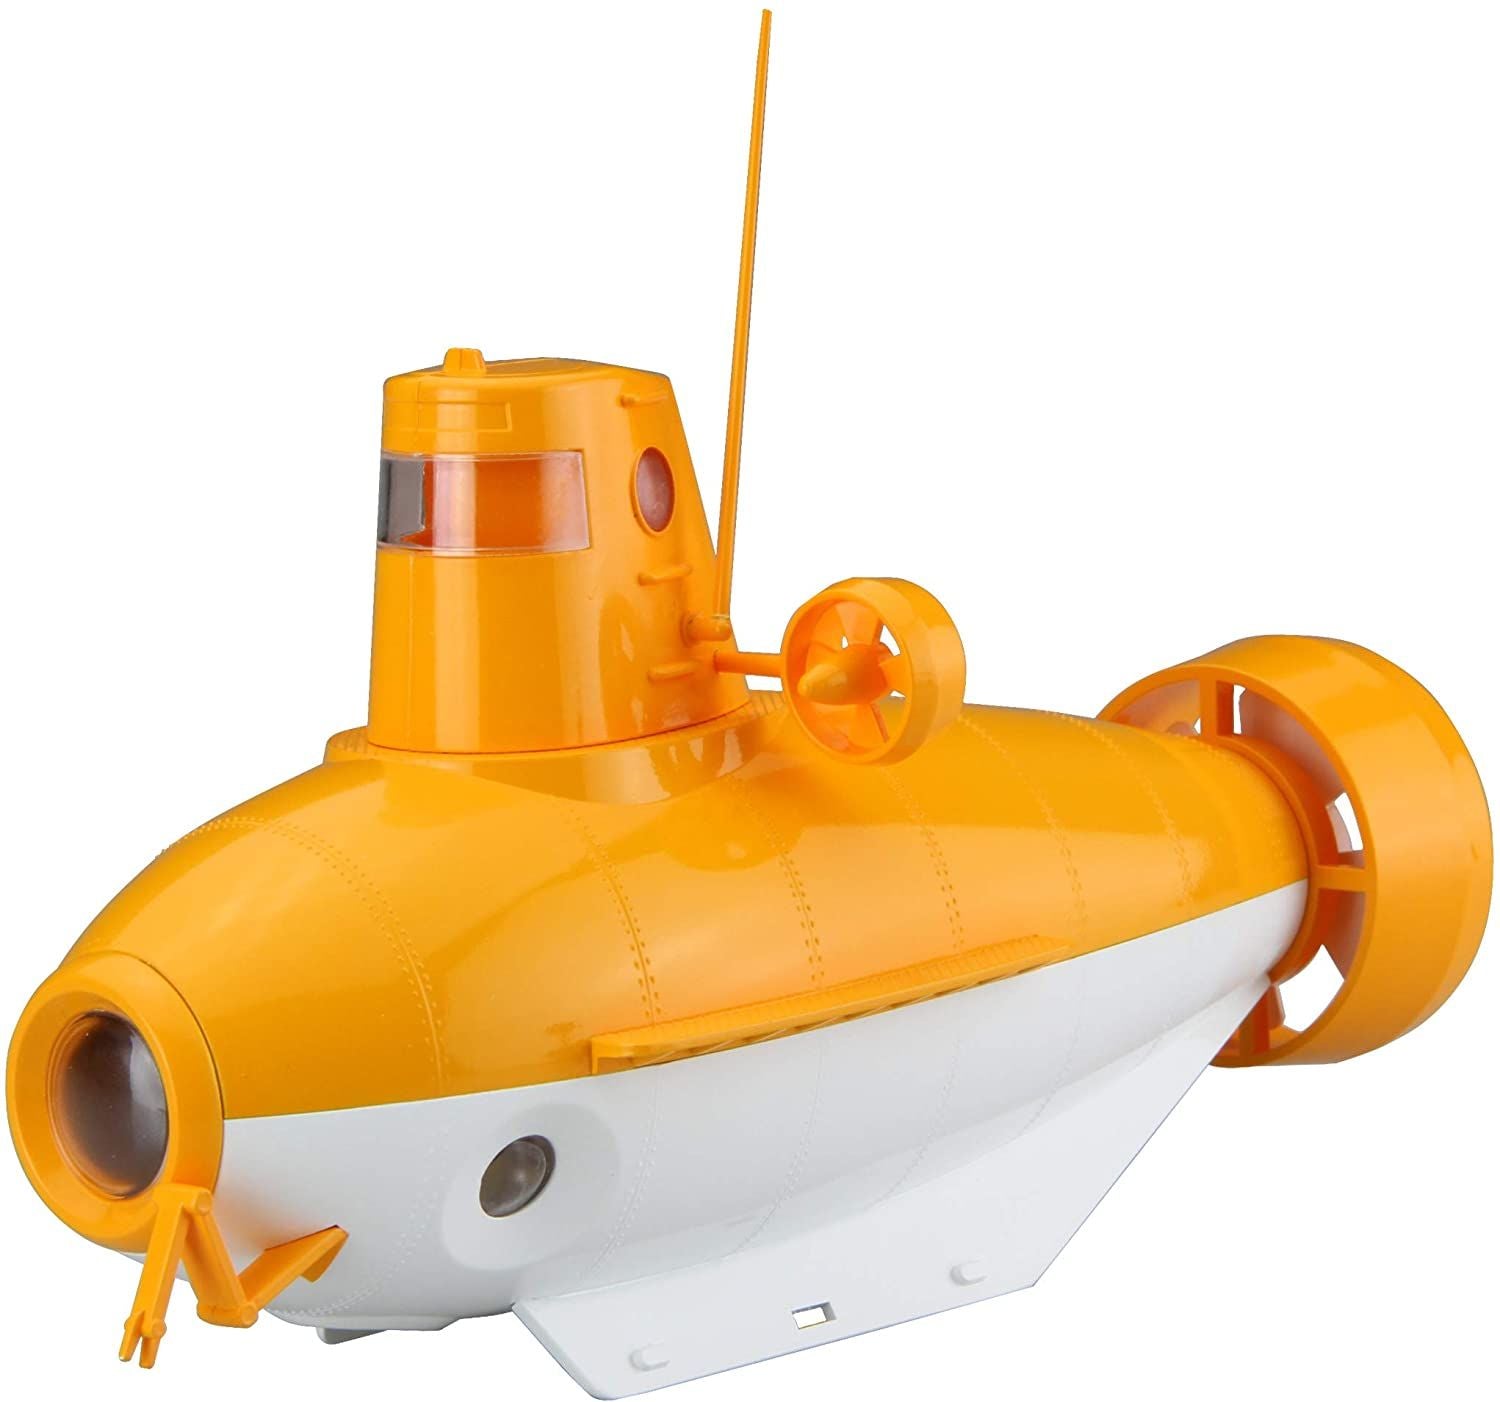 Fujimi Machine Edition Submarine (Orange/White) - BanzaiHobby